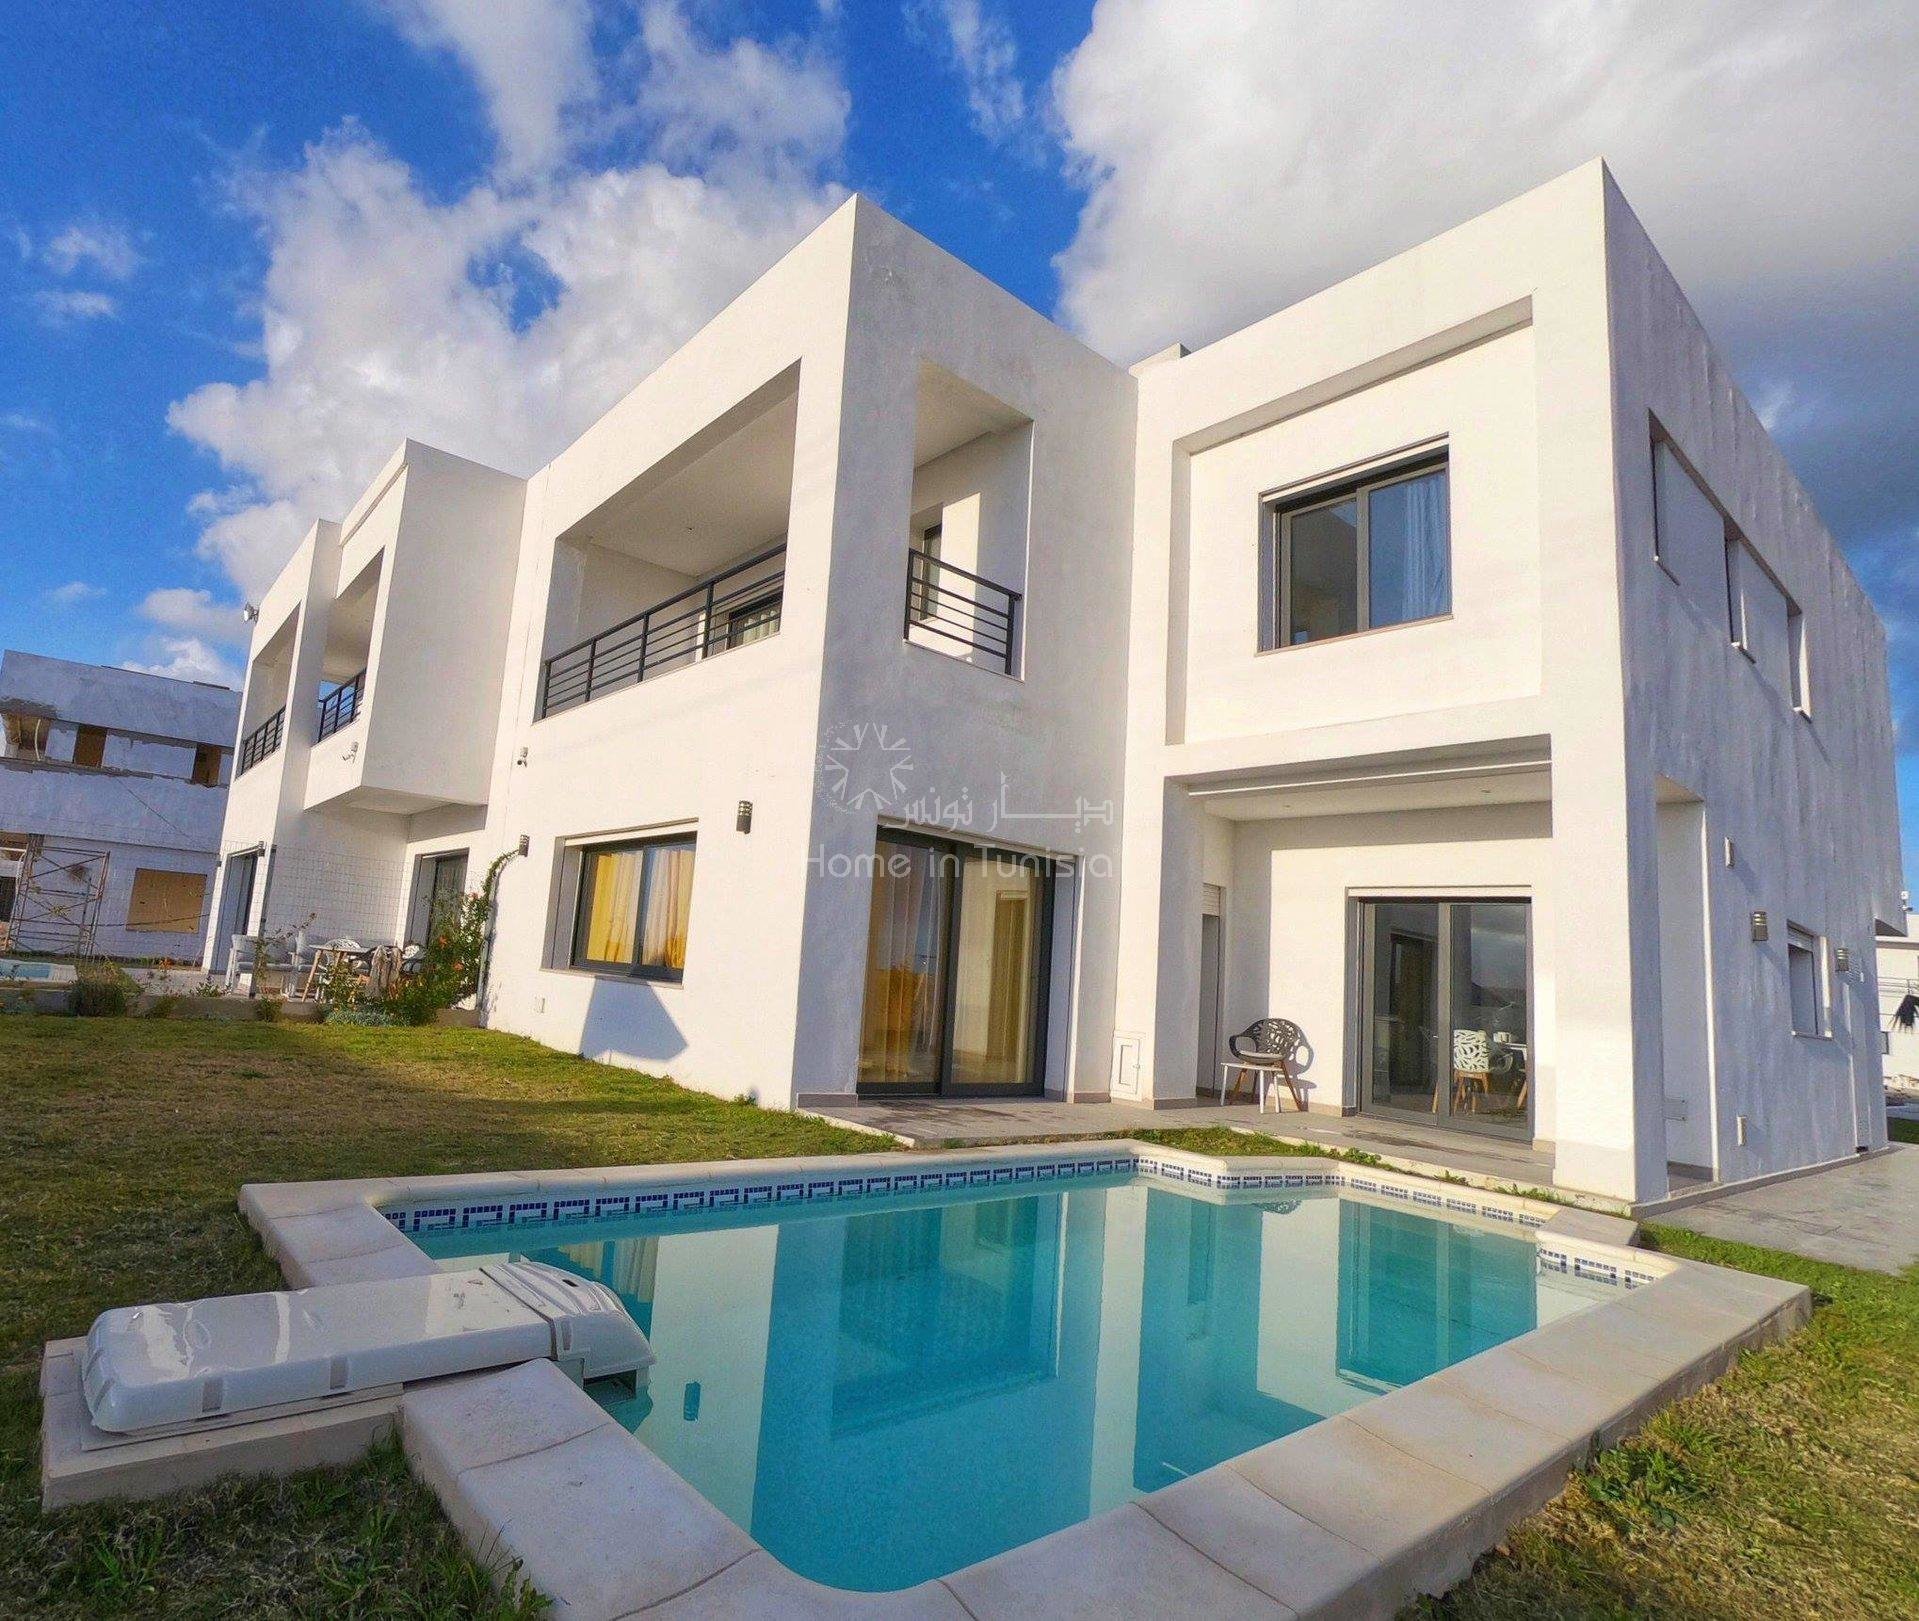 Villa golf isolée neuve de 458 m2 avec 4 chambres terrasse jardin piscine